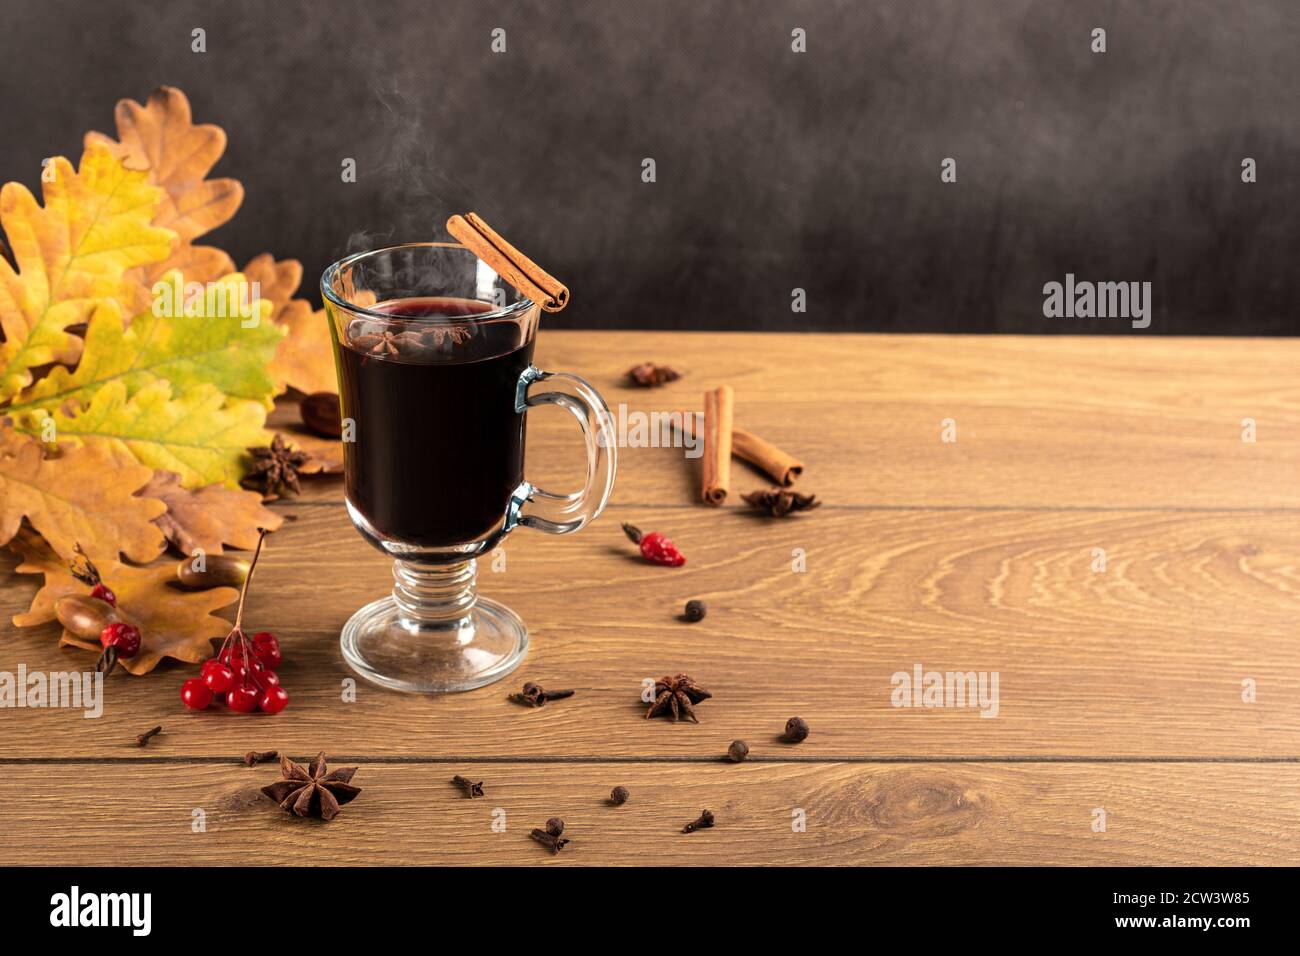 Vin chaud dans des tasses de verre avec de la cannelle et de l'anis sur une table en bois. Fond de feuilles de chêne tombées. Copyspace d'automne Banque D'Images